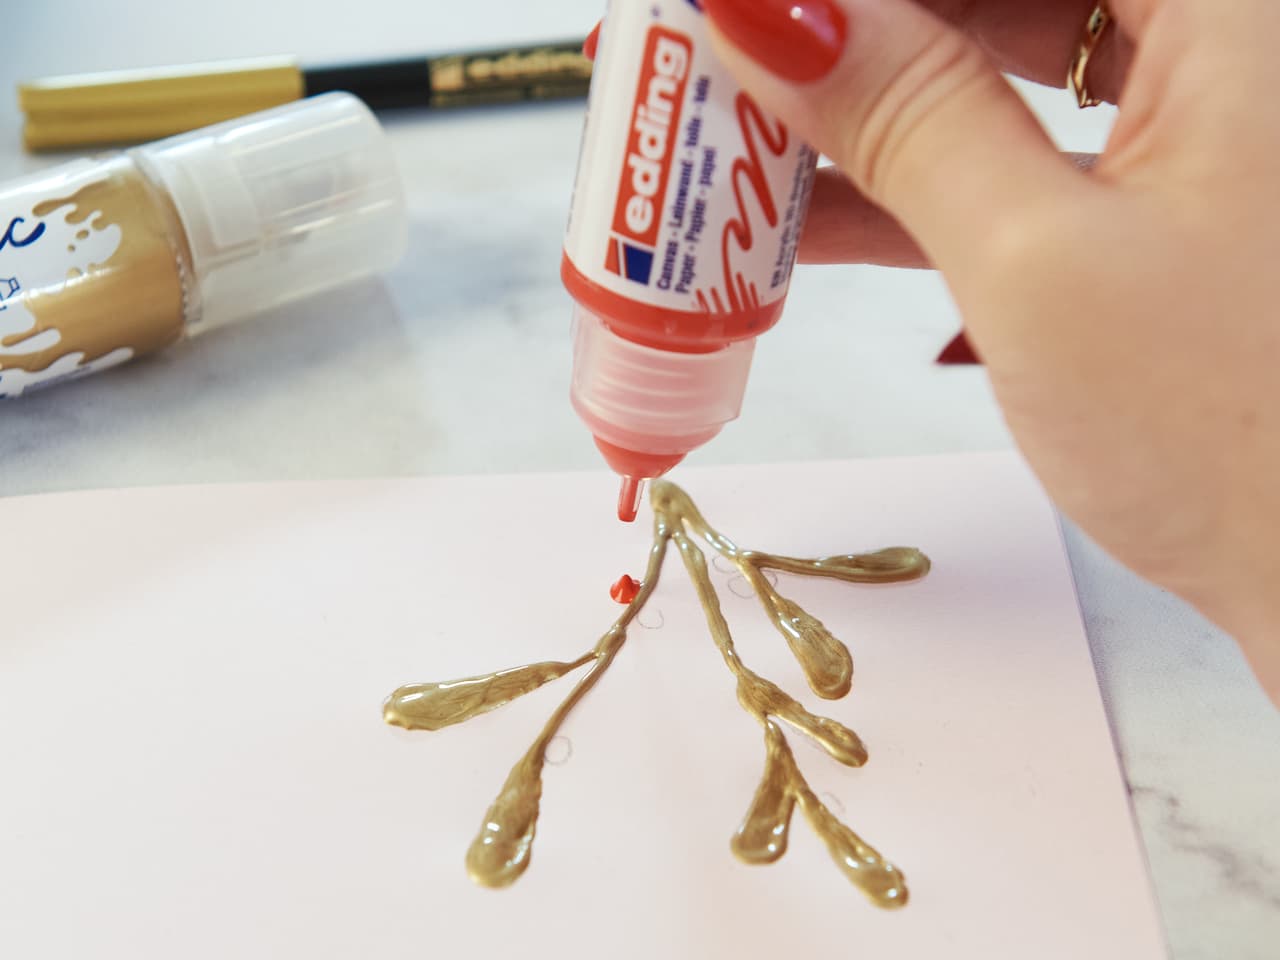 Die Hand einer Person drückt einen roten edding 5400 Acryl 3D Double Liner über ein Papier mit goldener Farbe und bildet bereits ein Blattzweigmuster.